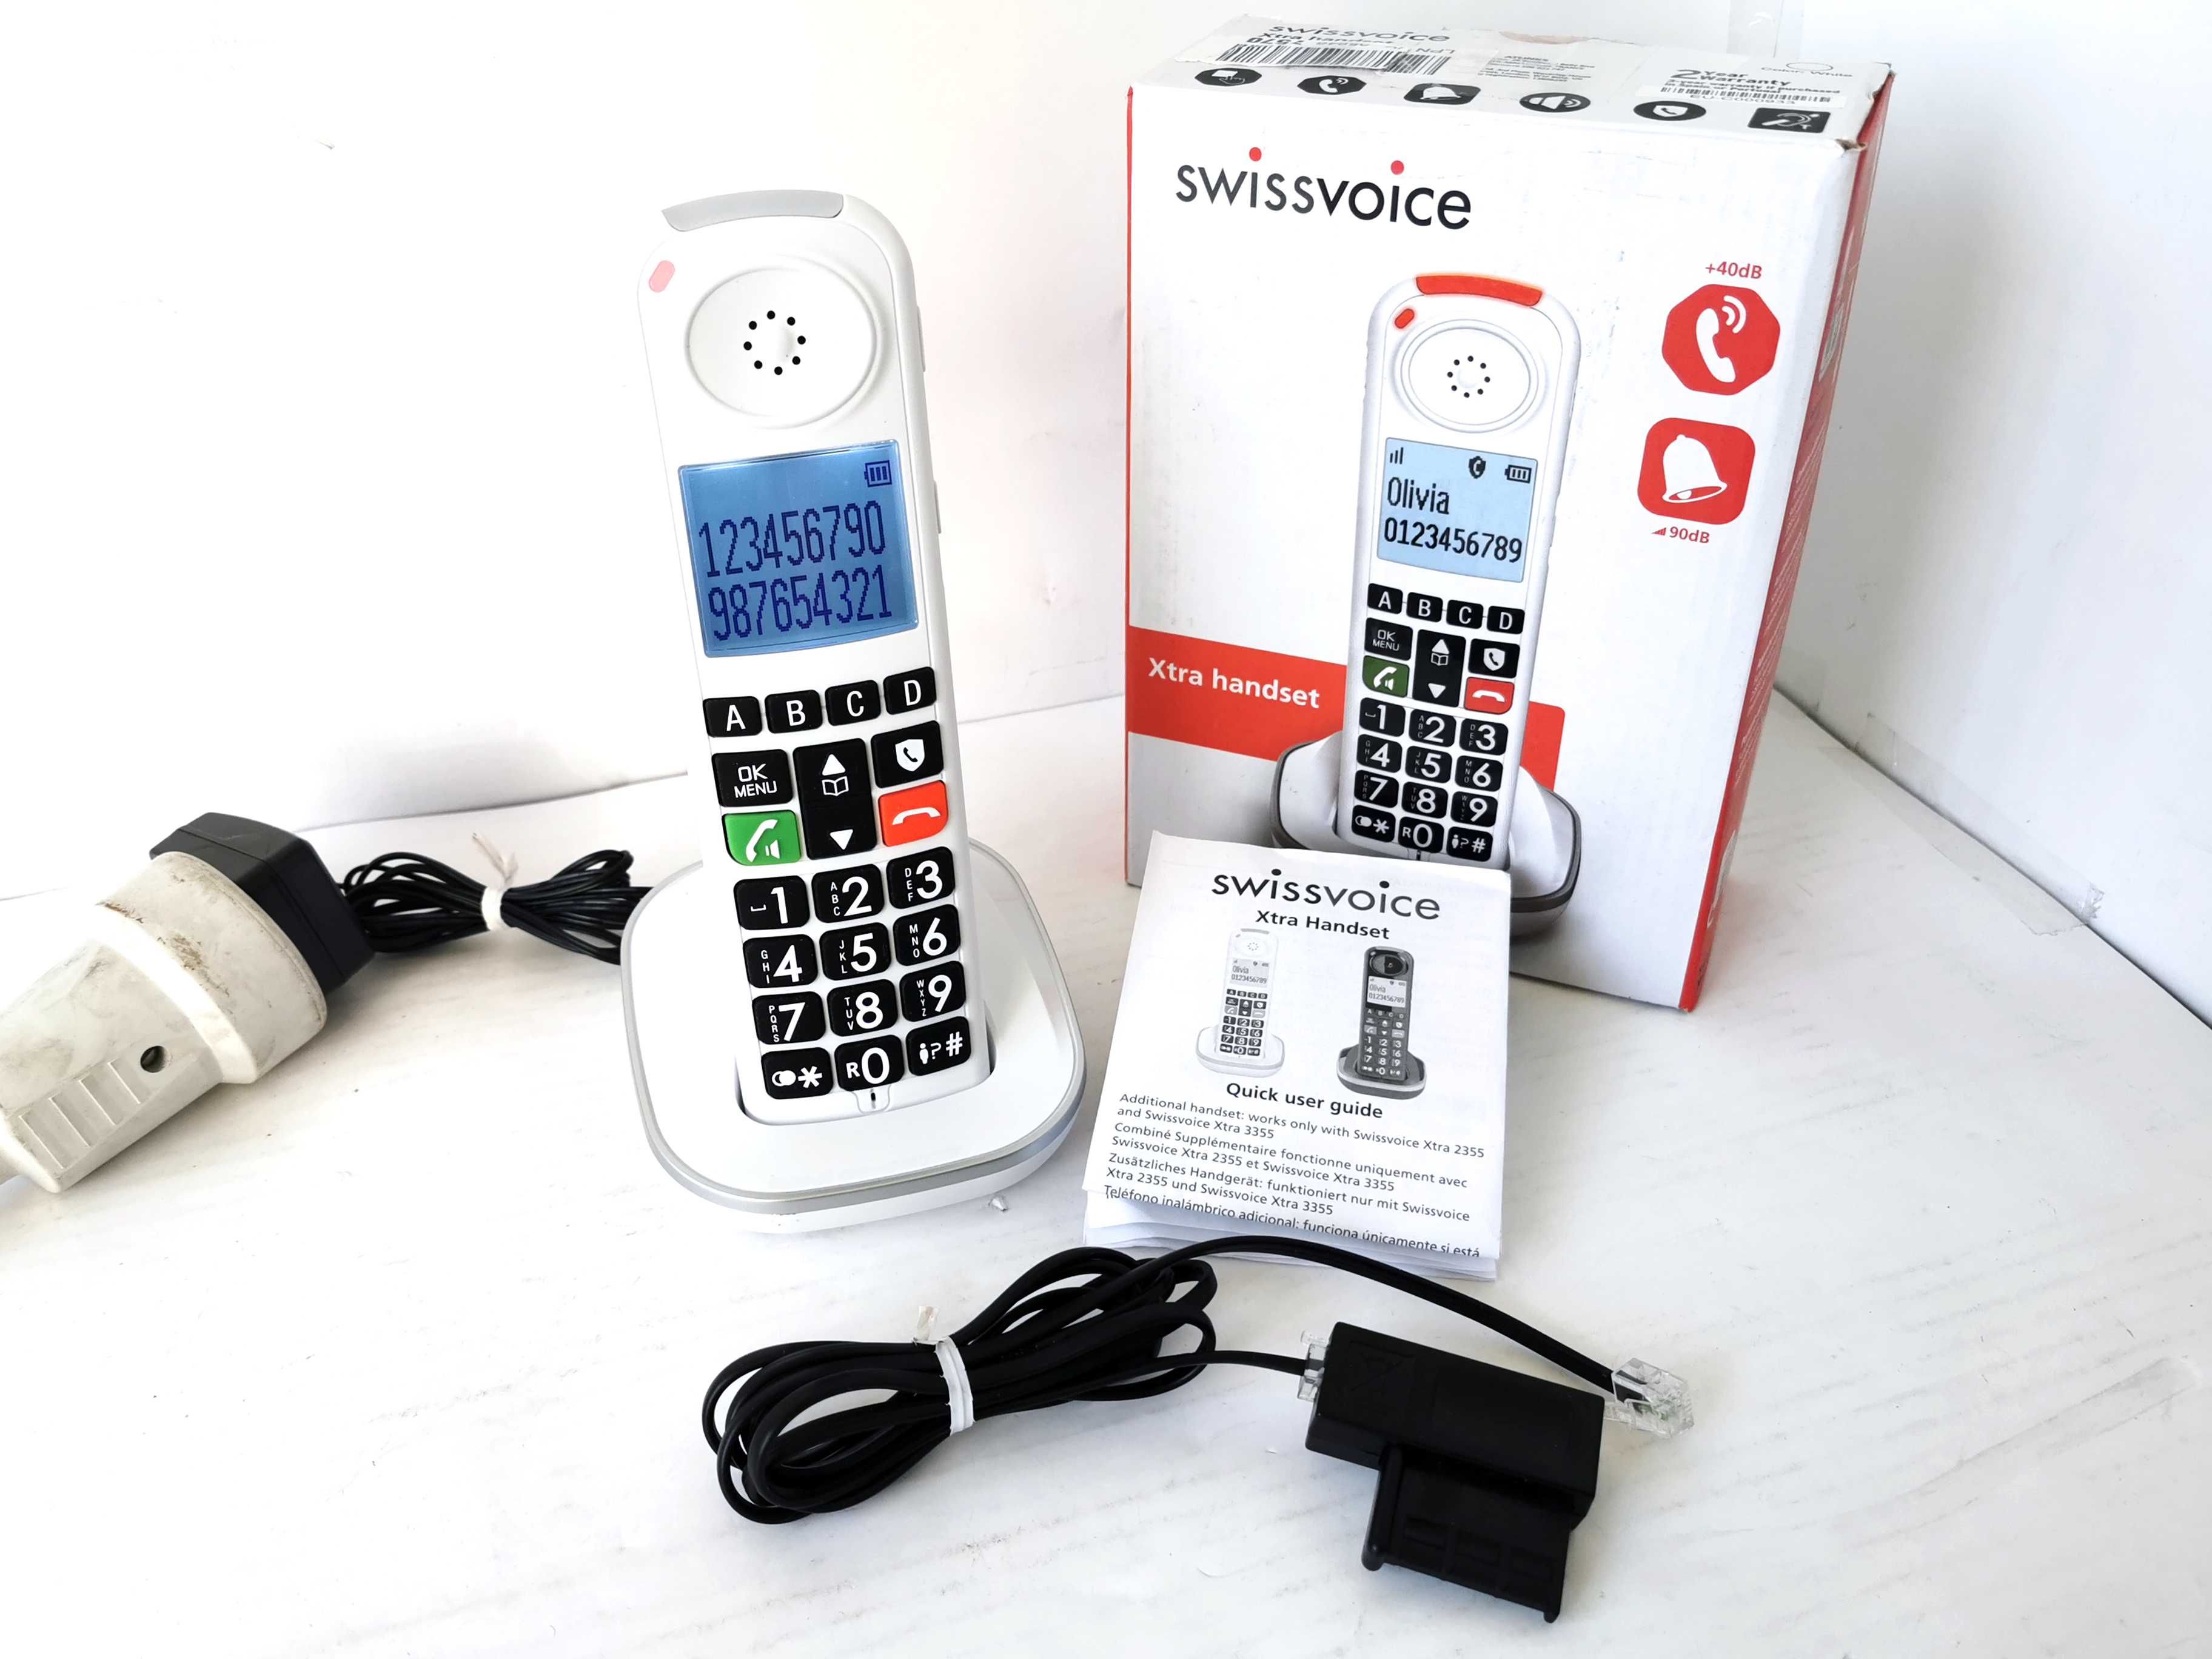 Telefon bezprzewodowy Swissvoice Xtra handset 2355